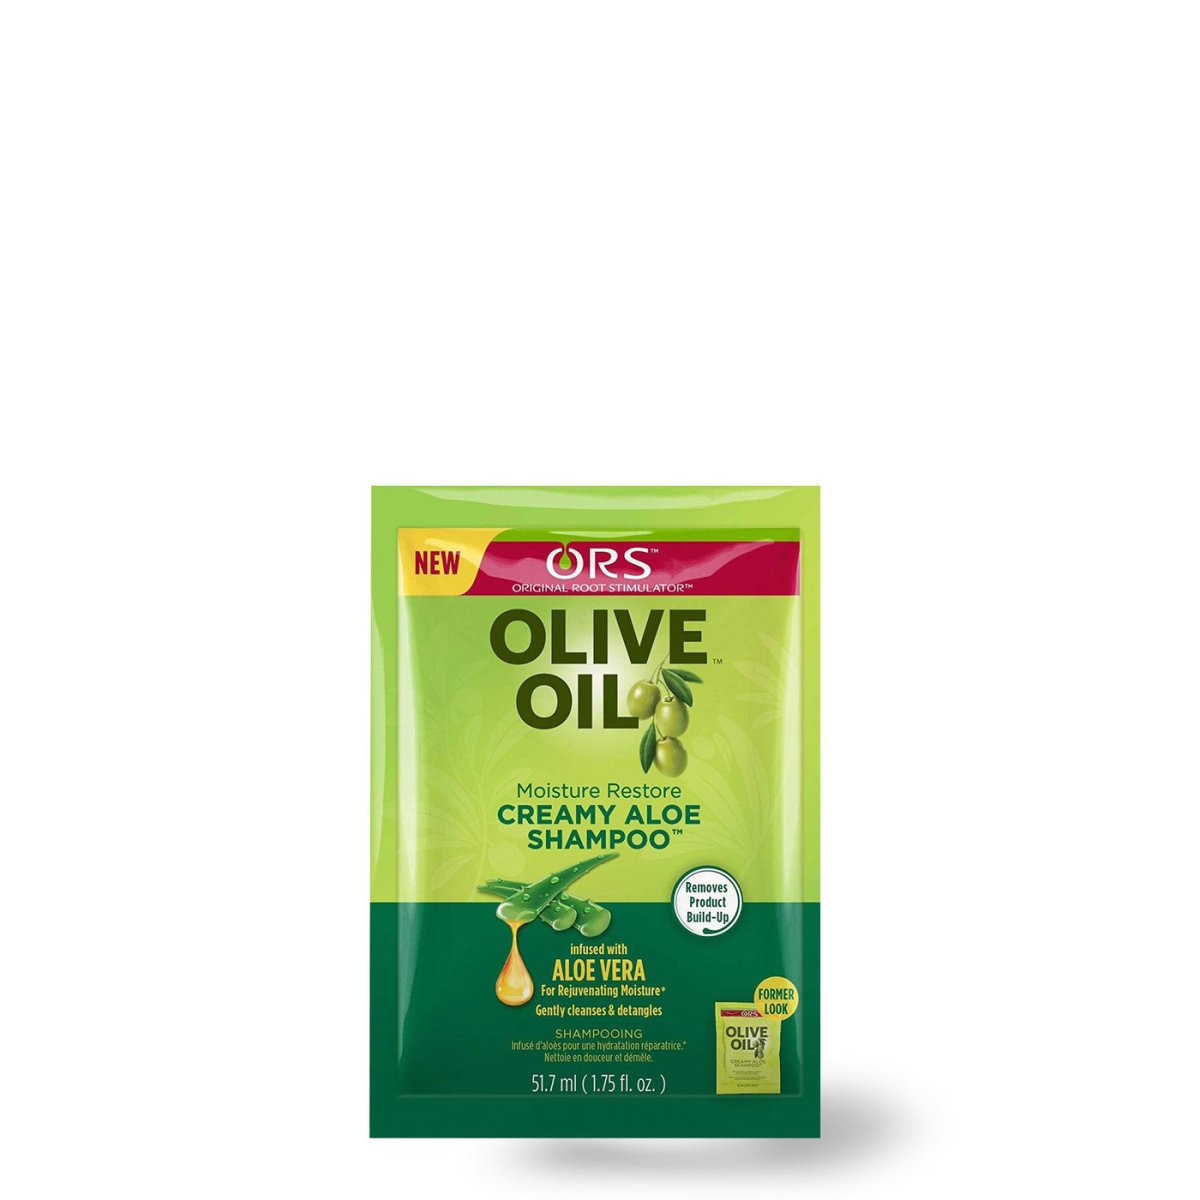 ORS Olive Oil Creamy Aloe Shampoo 12.5oz - Southwestsix Cosmetics ORS Olive Oil Creamy Aloe Shampoo 12.5oz Shampoo ORS Southwestsix Cosmetics 1.75oz ORS Olive Oil Creamy Aloe Shampoo 12.5oz